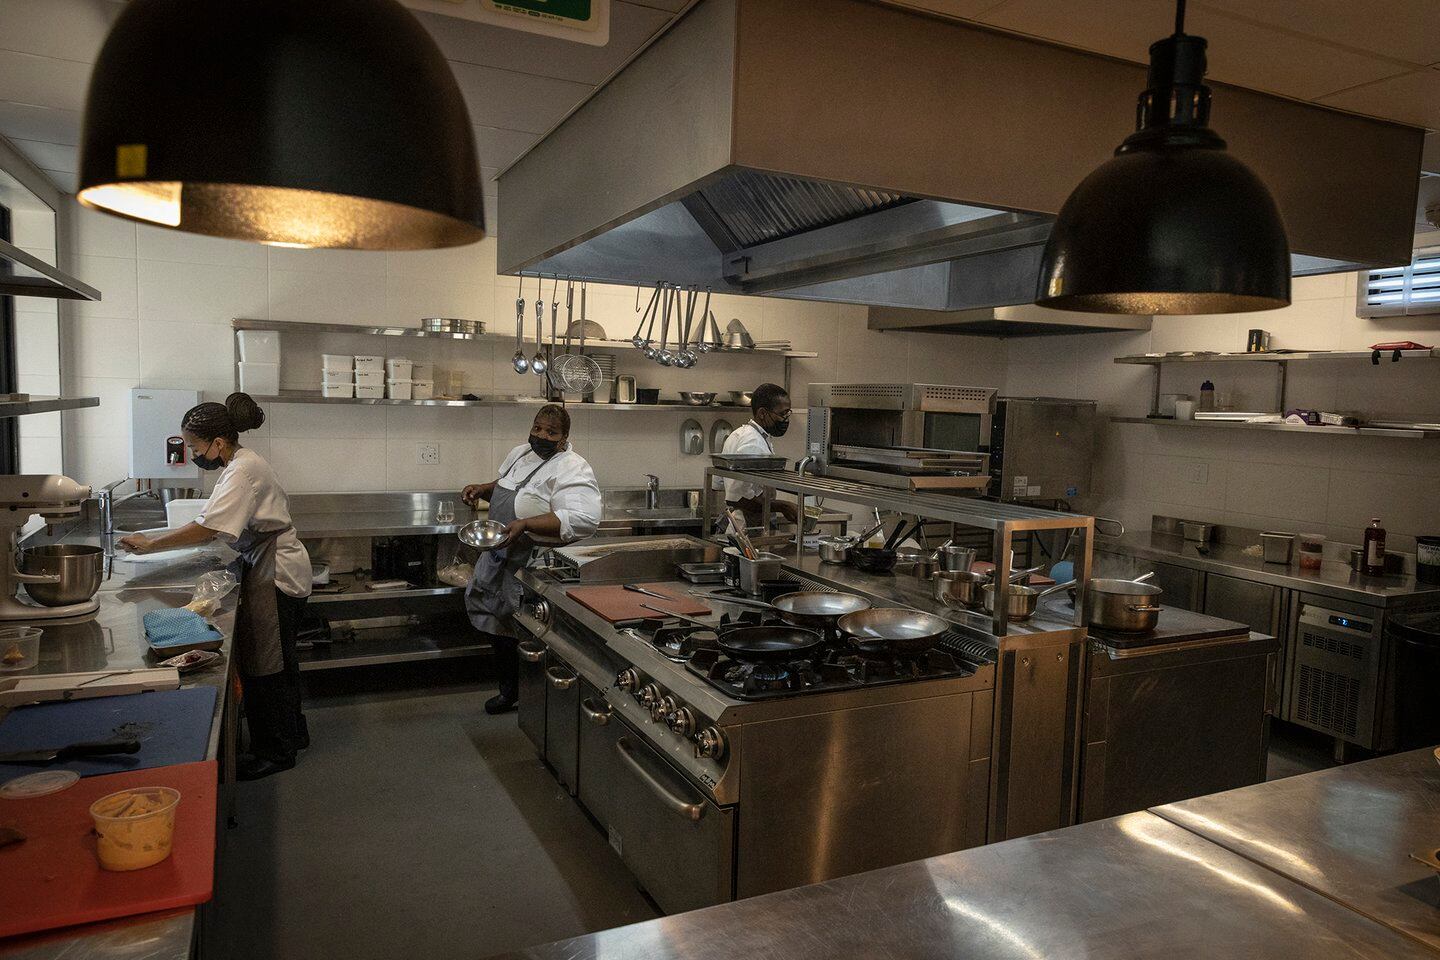 La cocinera personal del ex presidente sudafricano Nelson Mandela y ahora chef del restaurante Sanctuary Mandela, Xoliswa Ndoyiya, prepara los alimentos en la cocina del restaurante en Johannesburgo, el 19 de noviembre de 2021 (Foto de GUILLEM SARTORIO / AFP)